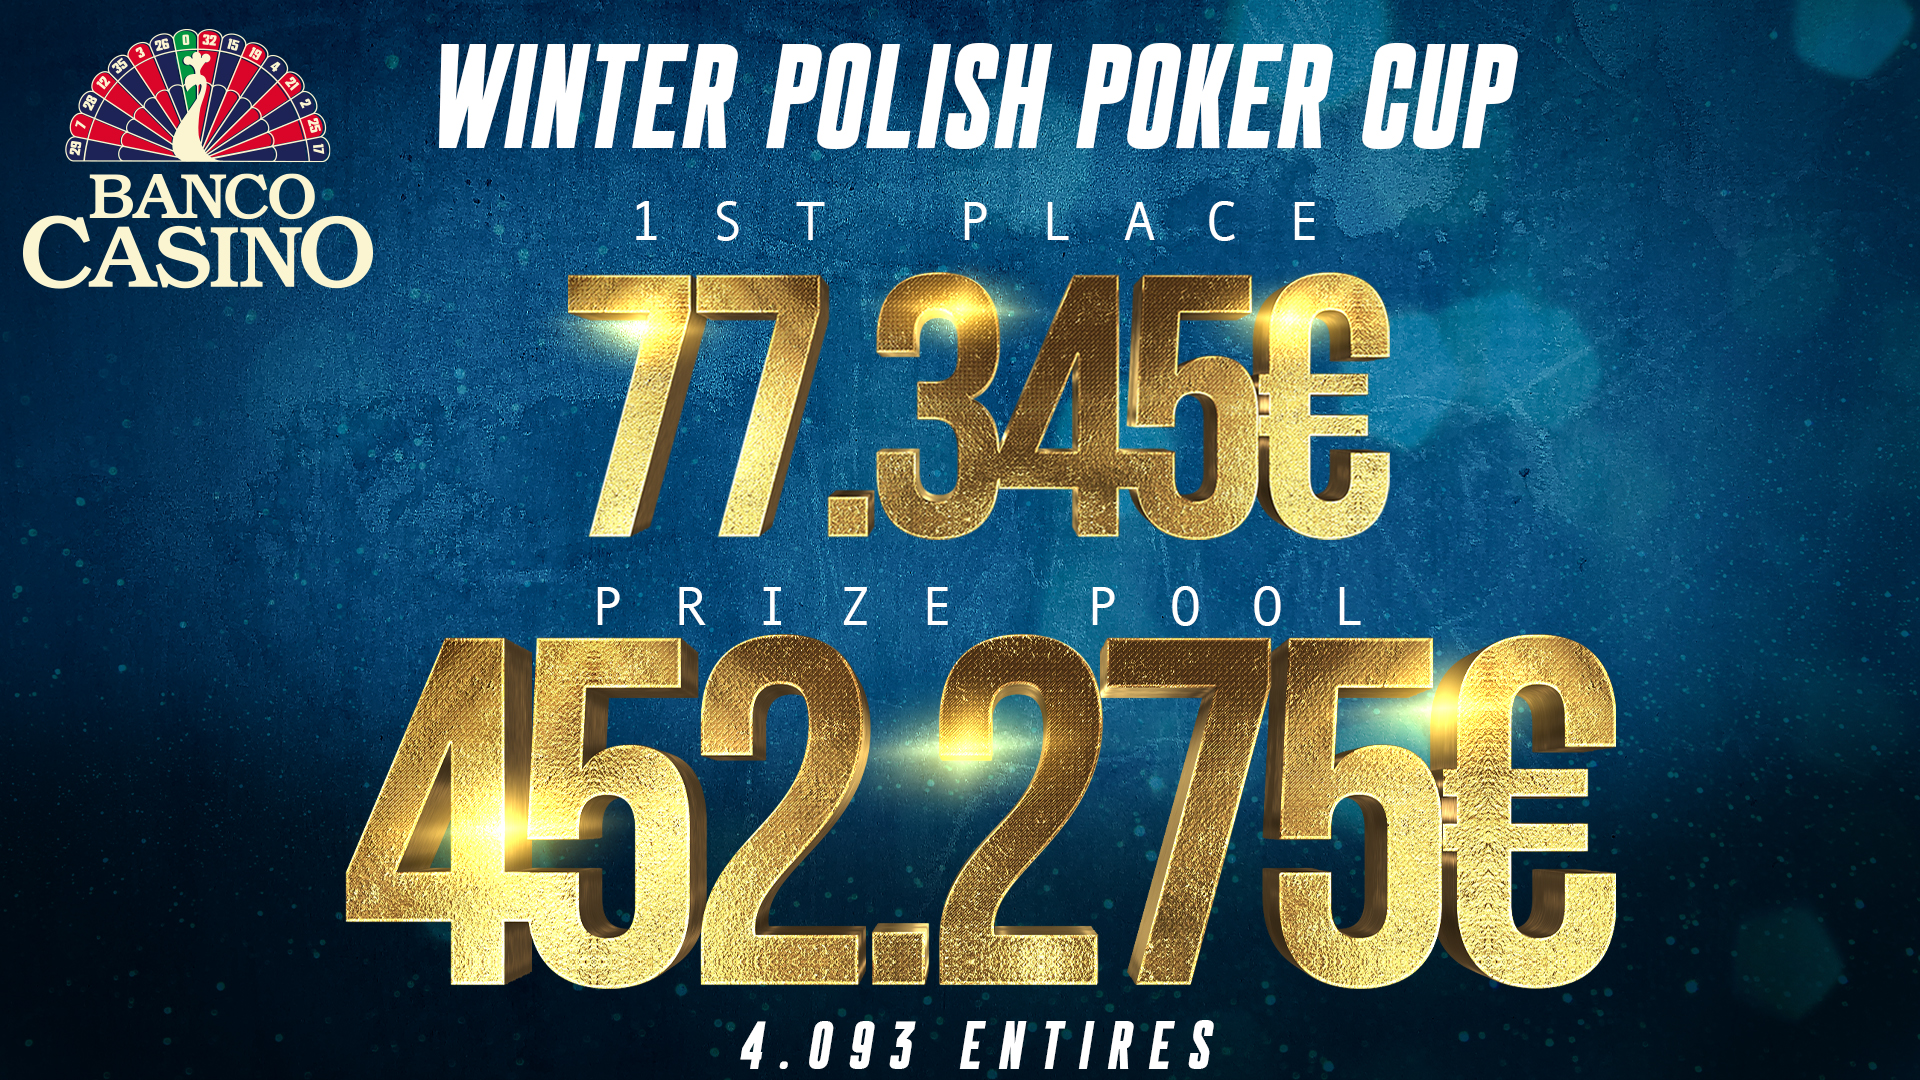 Winter Polish Poker Cup im Banco Casino belohnt den Sieger mit einem Preisgeld von € 77.345!